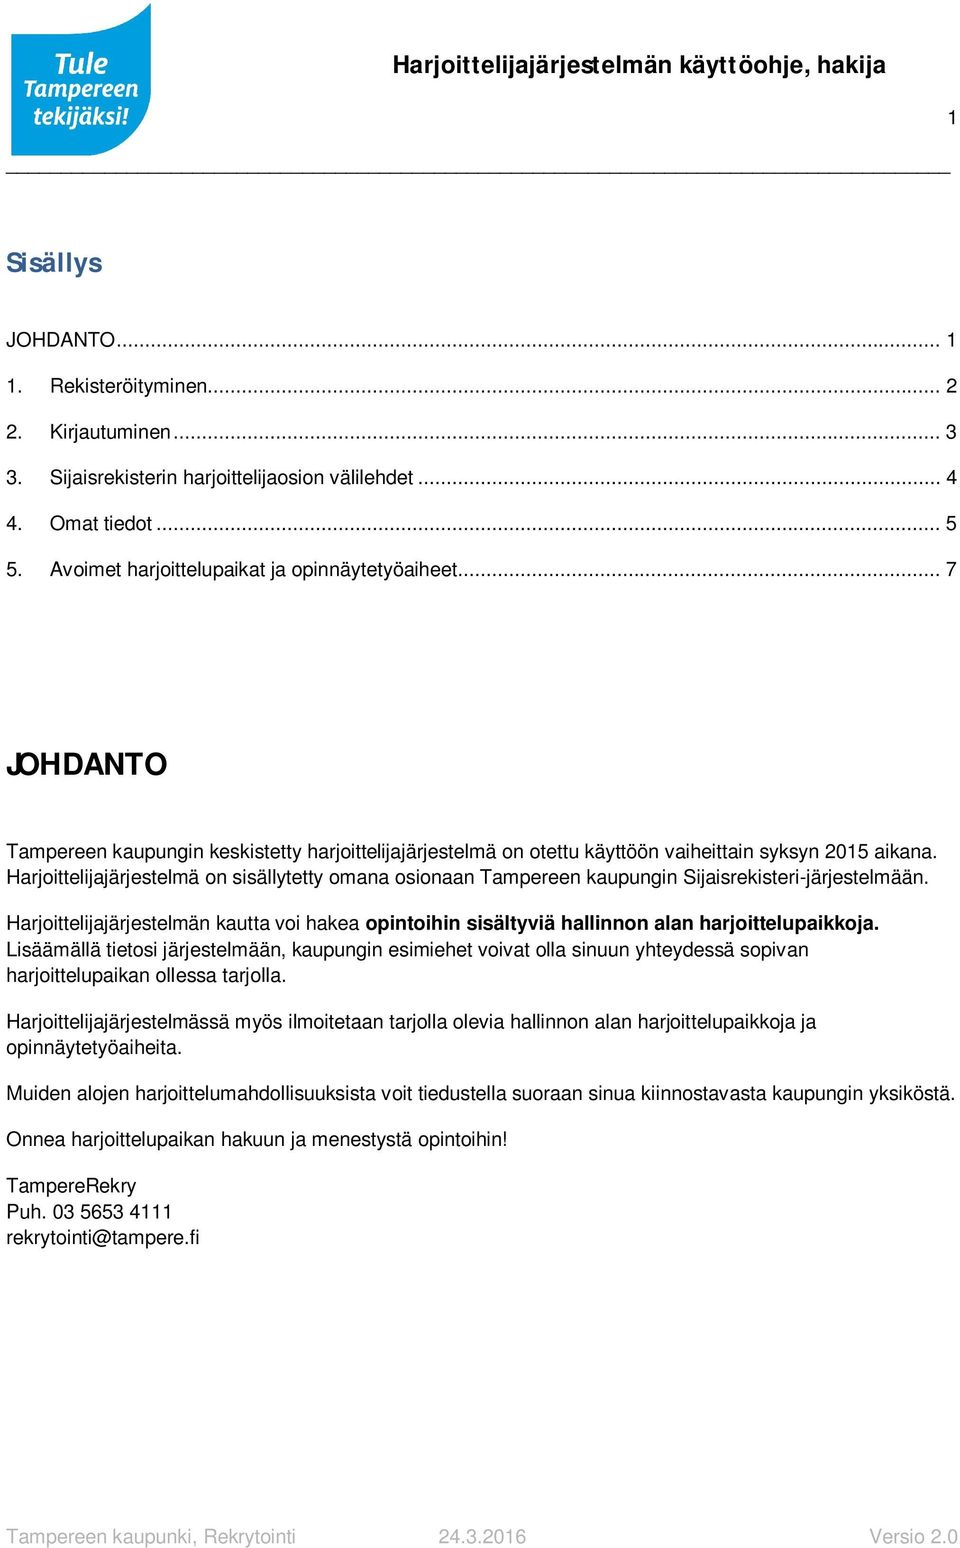 Harjoittelijajärjestelmä on sisällytetty omana osionaan Tampereen kaupungin Sijaisrekisteri-järjestelmään.